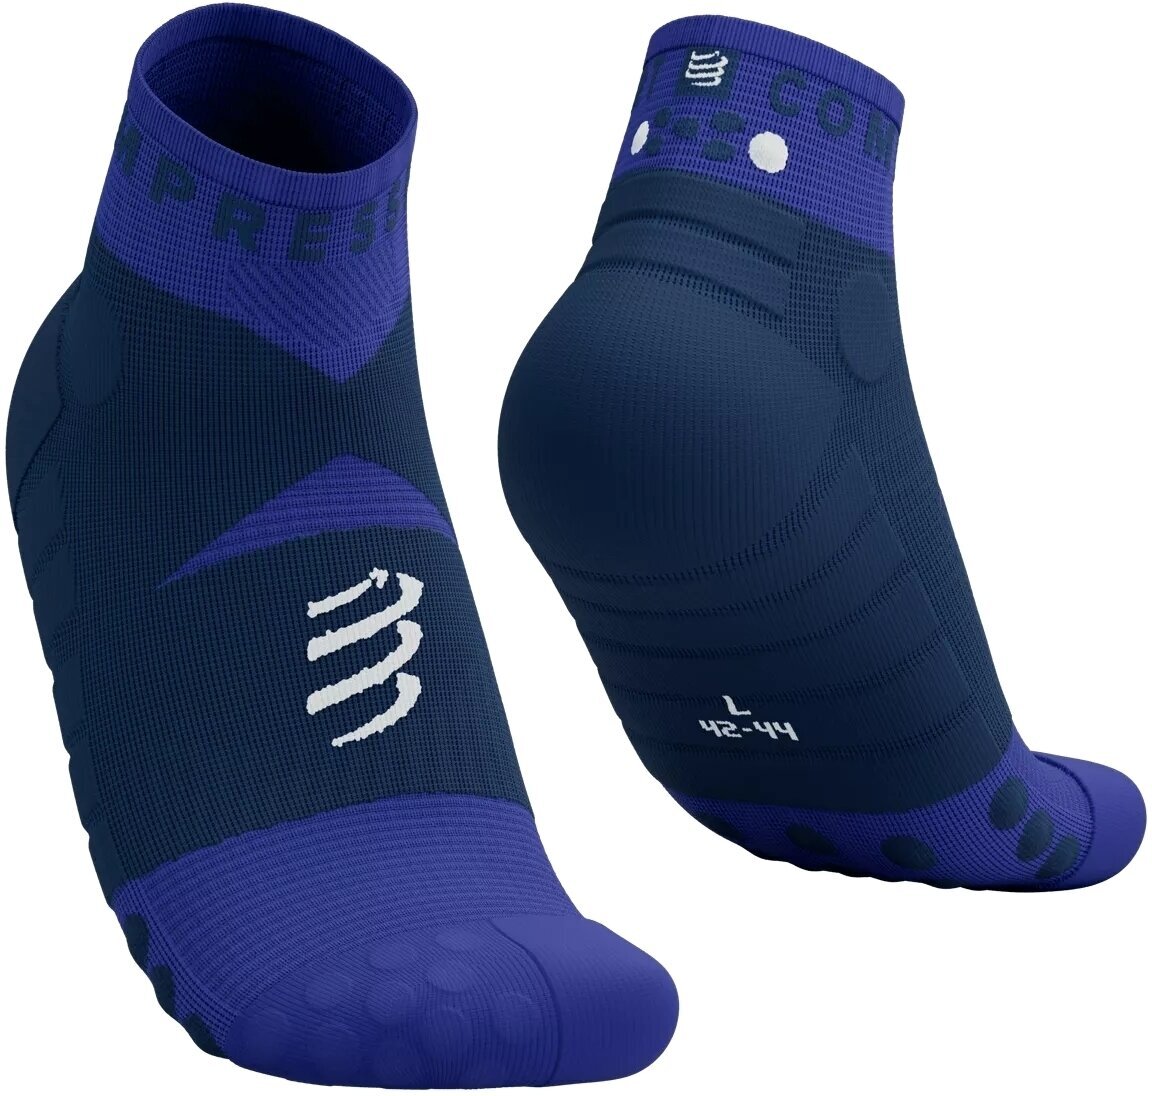 Bežecké ponožky
 Compressport Ultra Trail Low Socks Dazzling Blue/Dress Blues/White T4 Bežecké ponožky